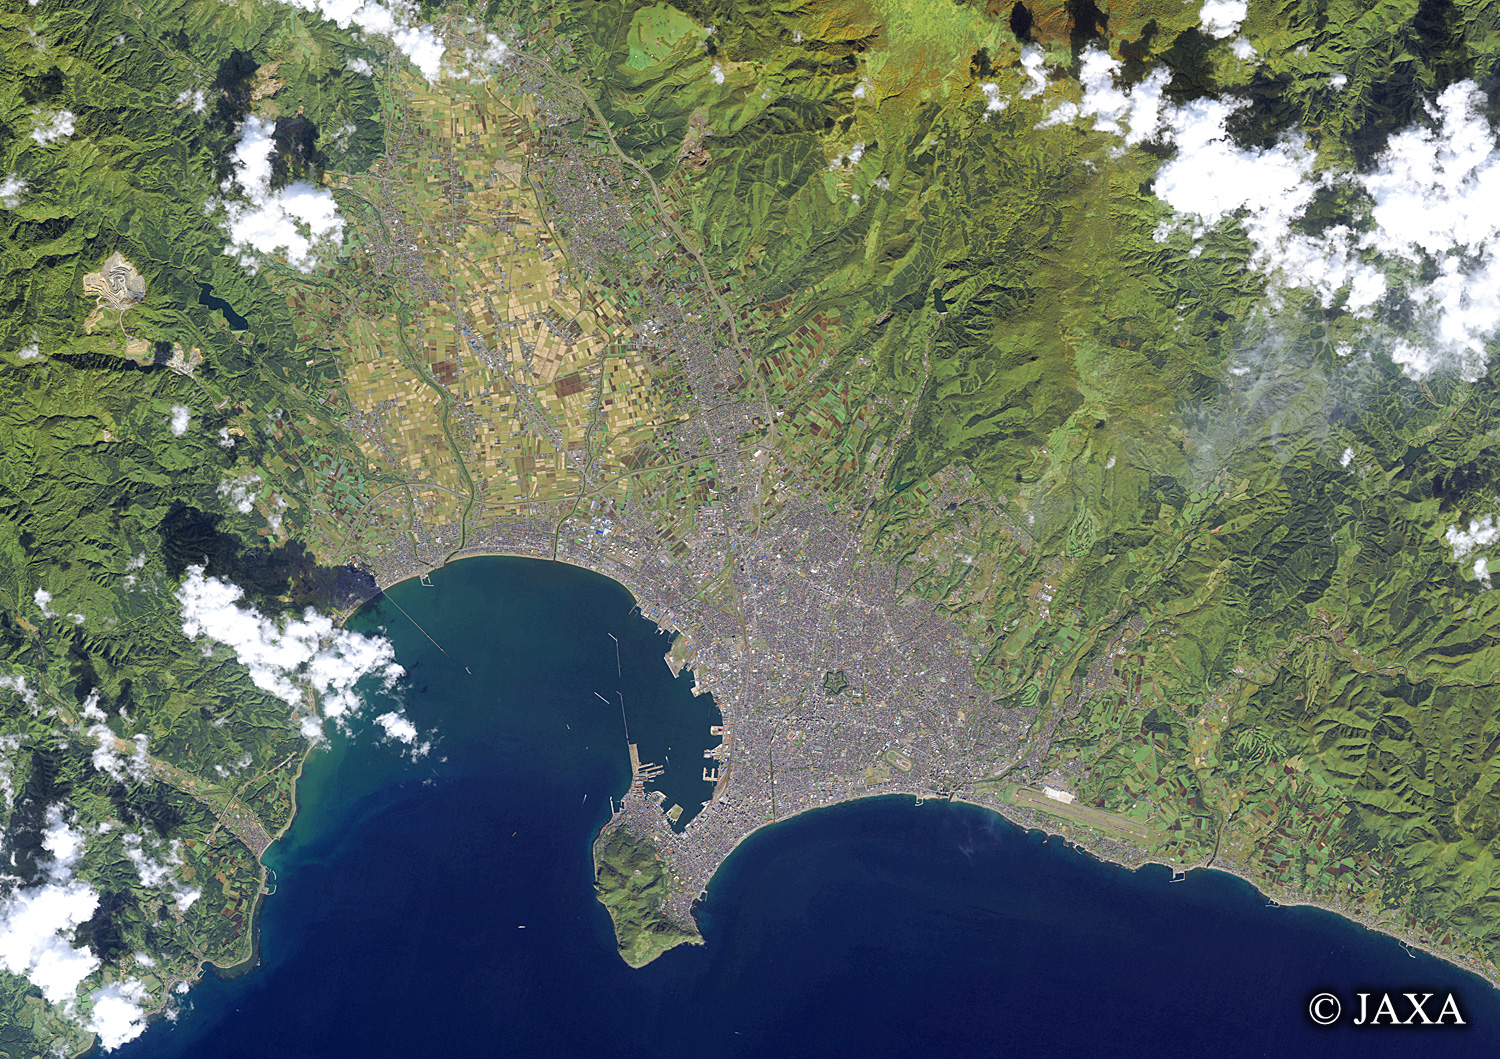 だいちから見た日本の都市 函館市:衛星画像